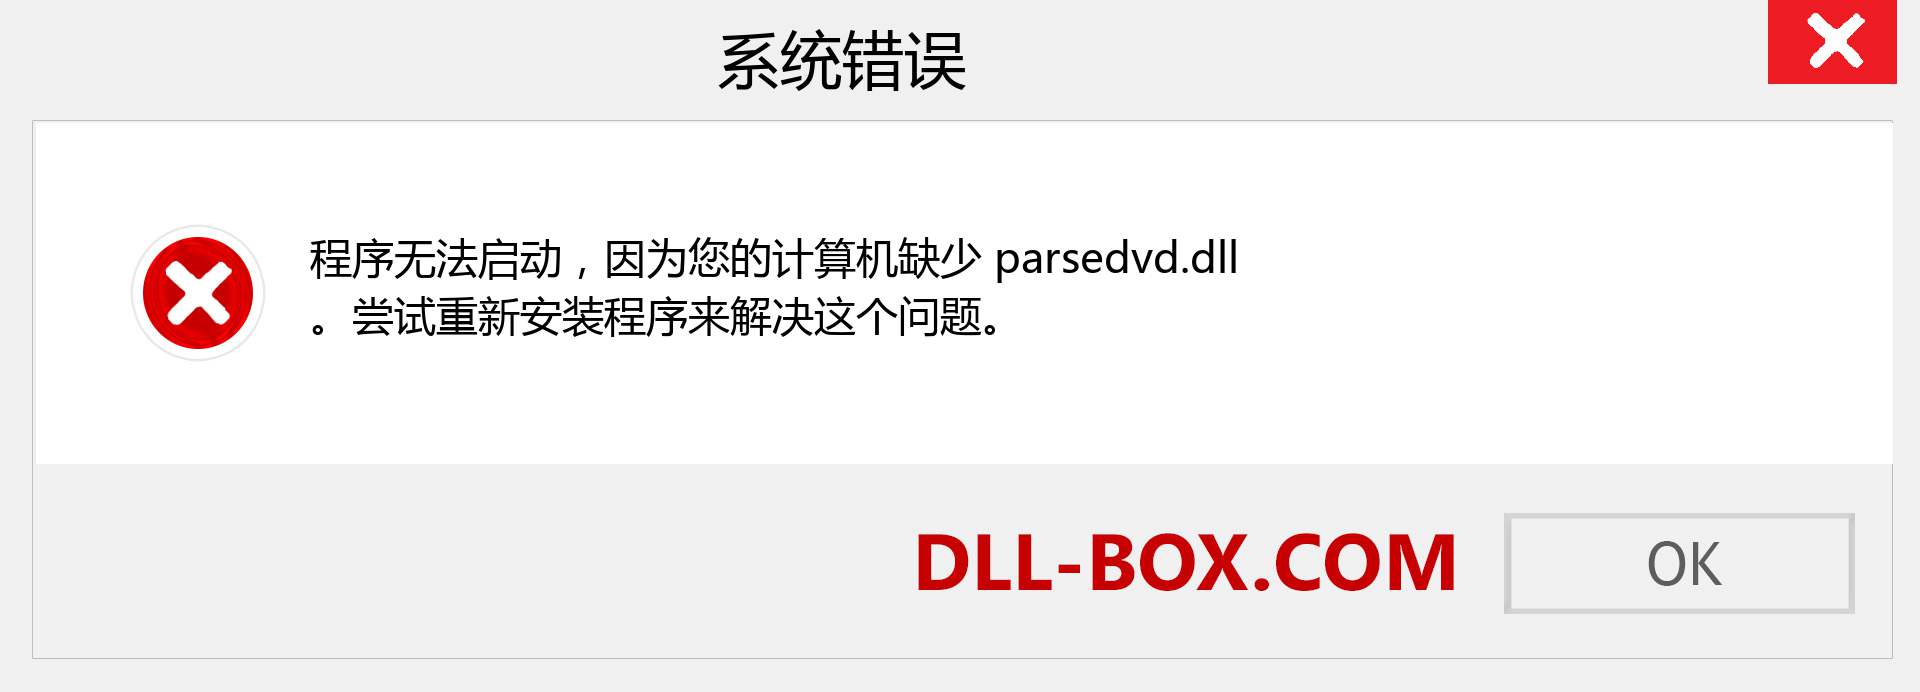 parsedvd.dll 文件丢失？。 适用于 Windows 7、8、10 的下载 - 修复 Windows、照片、图像上的 parsedvd dll 丢失错误